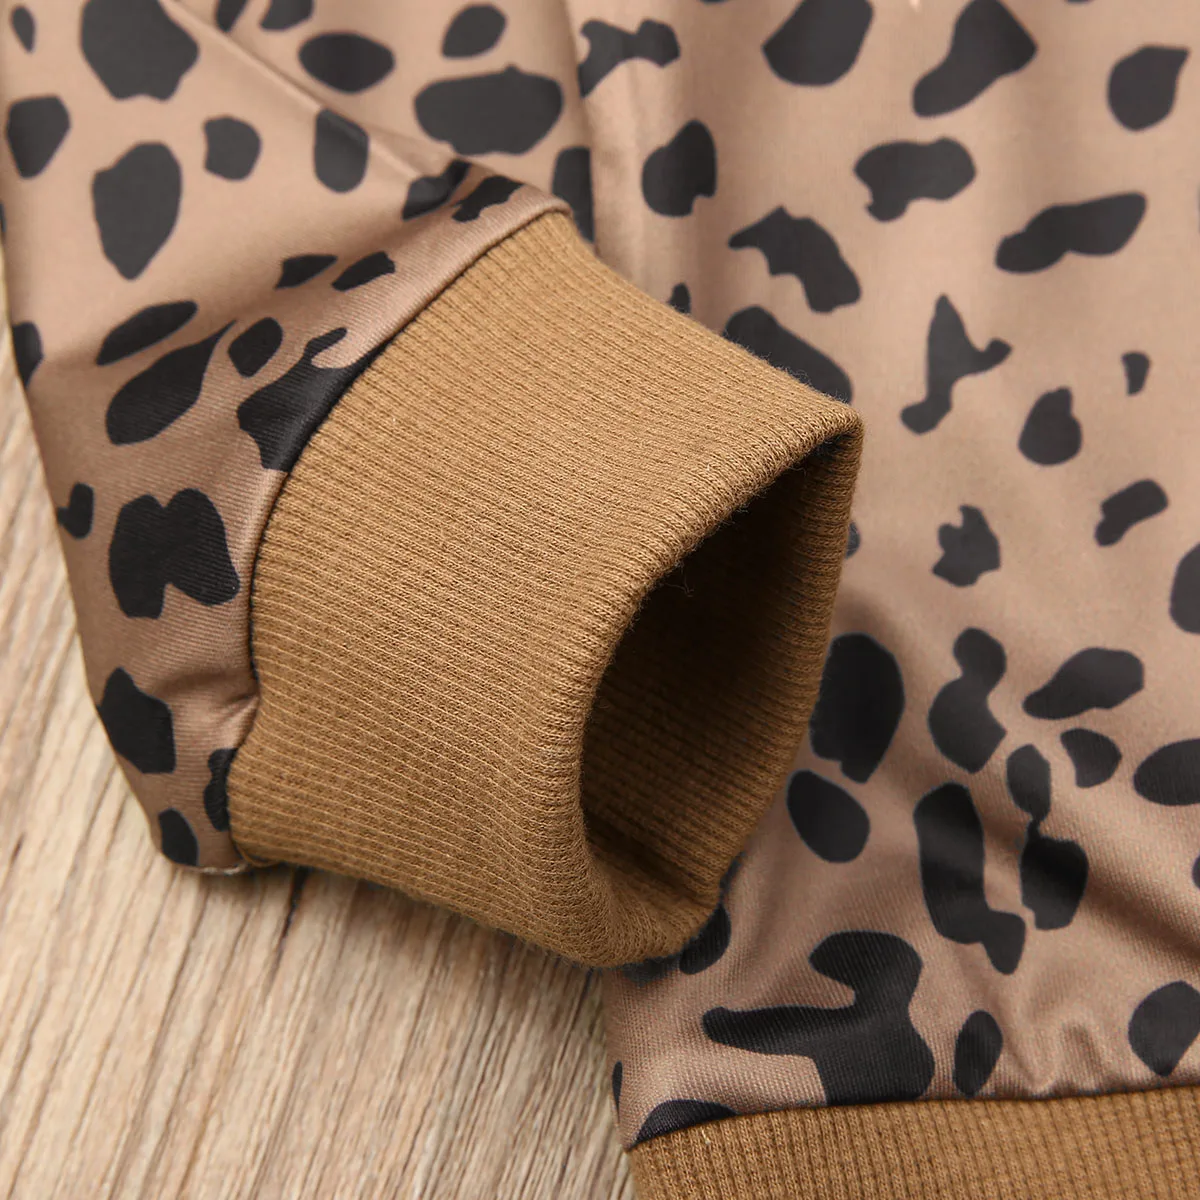 Pudcoco/США, новые модные повседневные леопардовые топы для маленьких девочек, футболка осенне-зимний свитер, пуловер